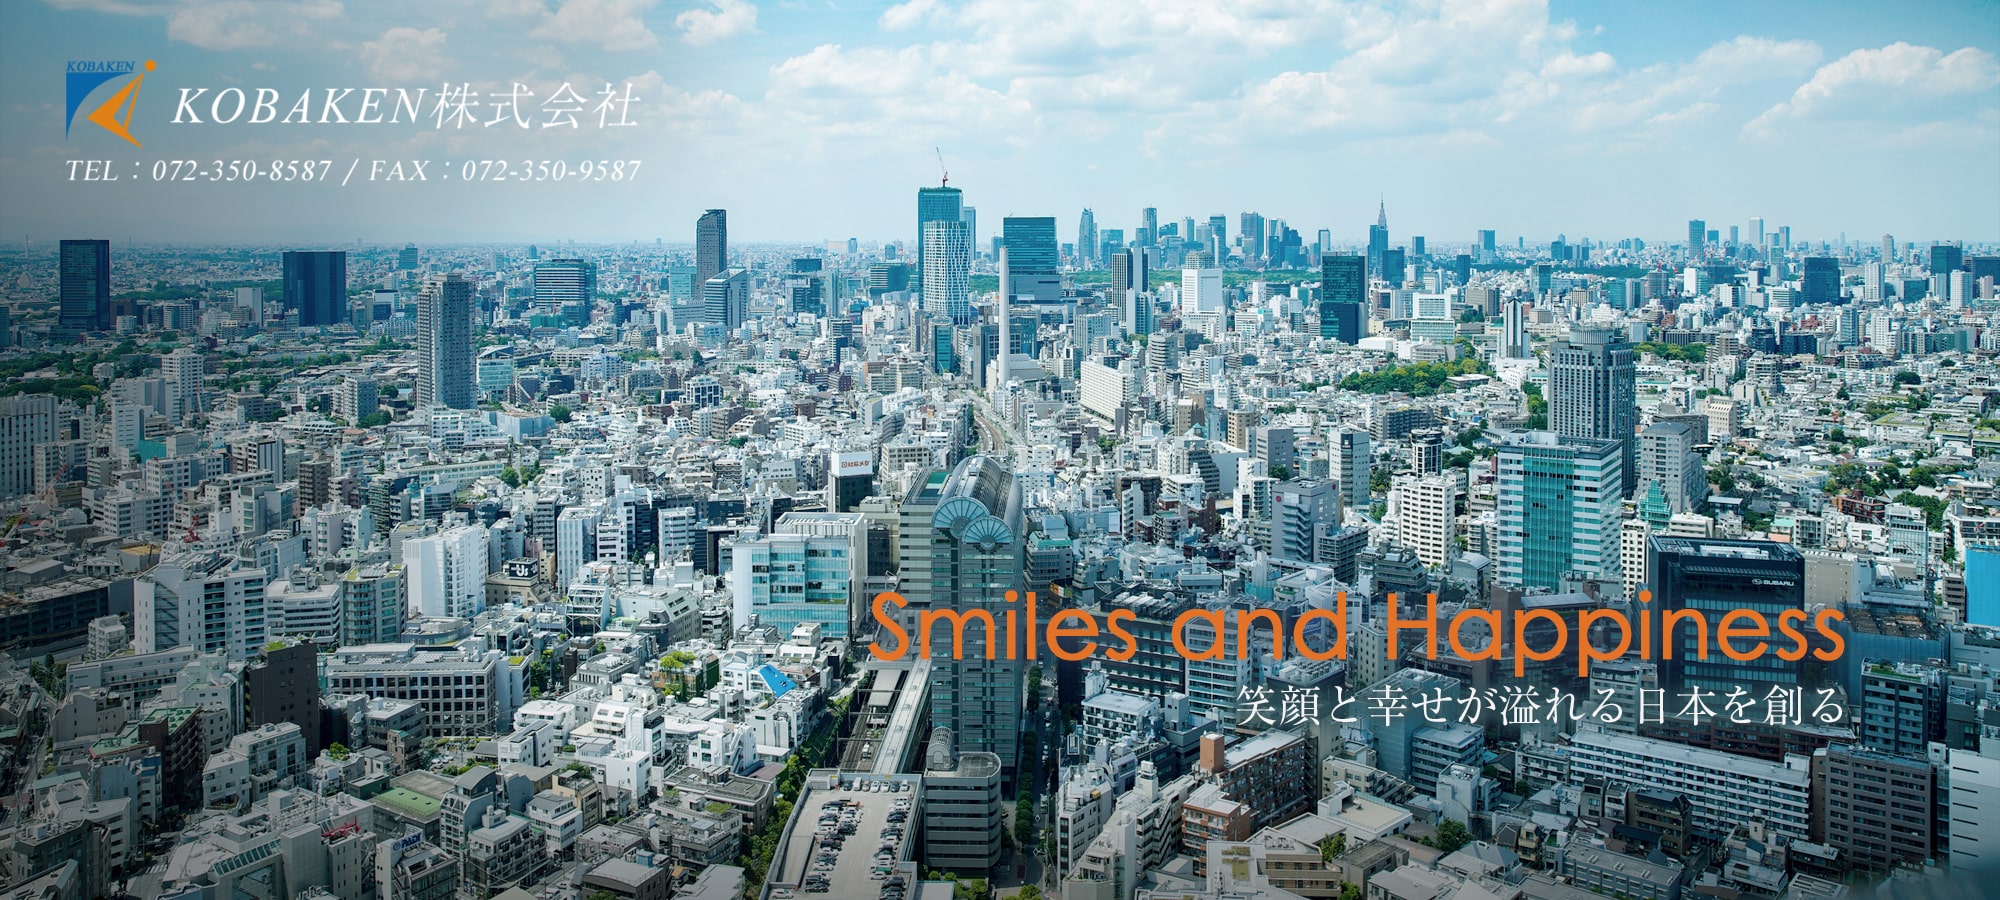 笑顔と幸せが溢れる日本を創る